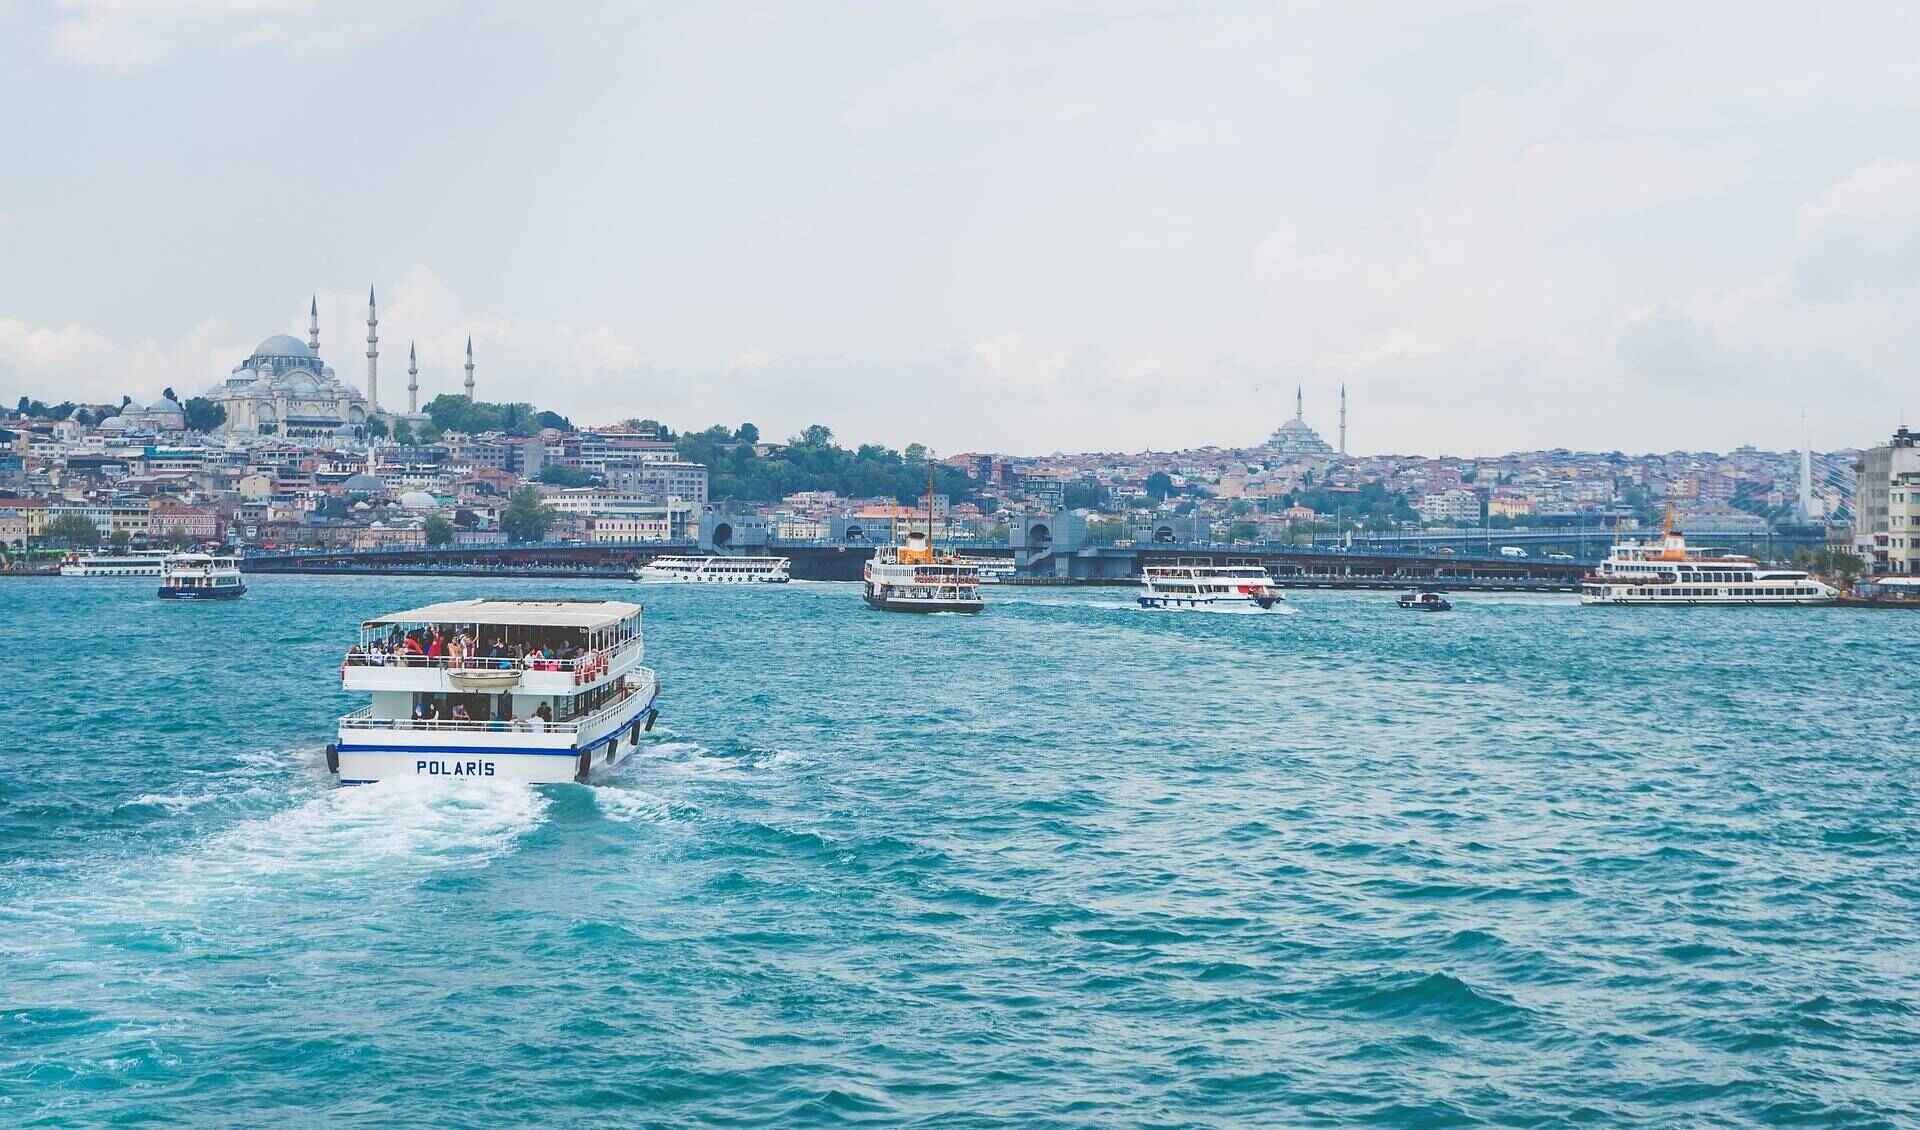 Стамбул в июне: жемчужина Босфора в лучах июньского солнца